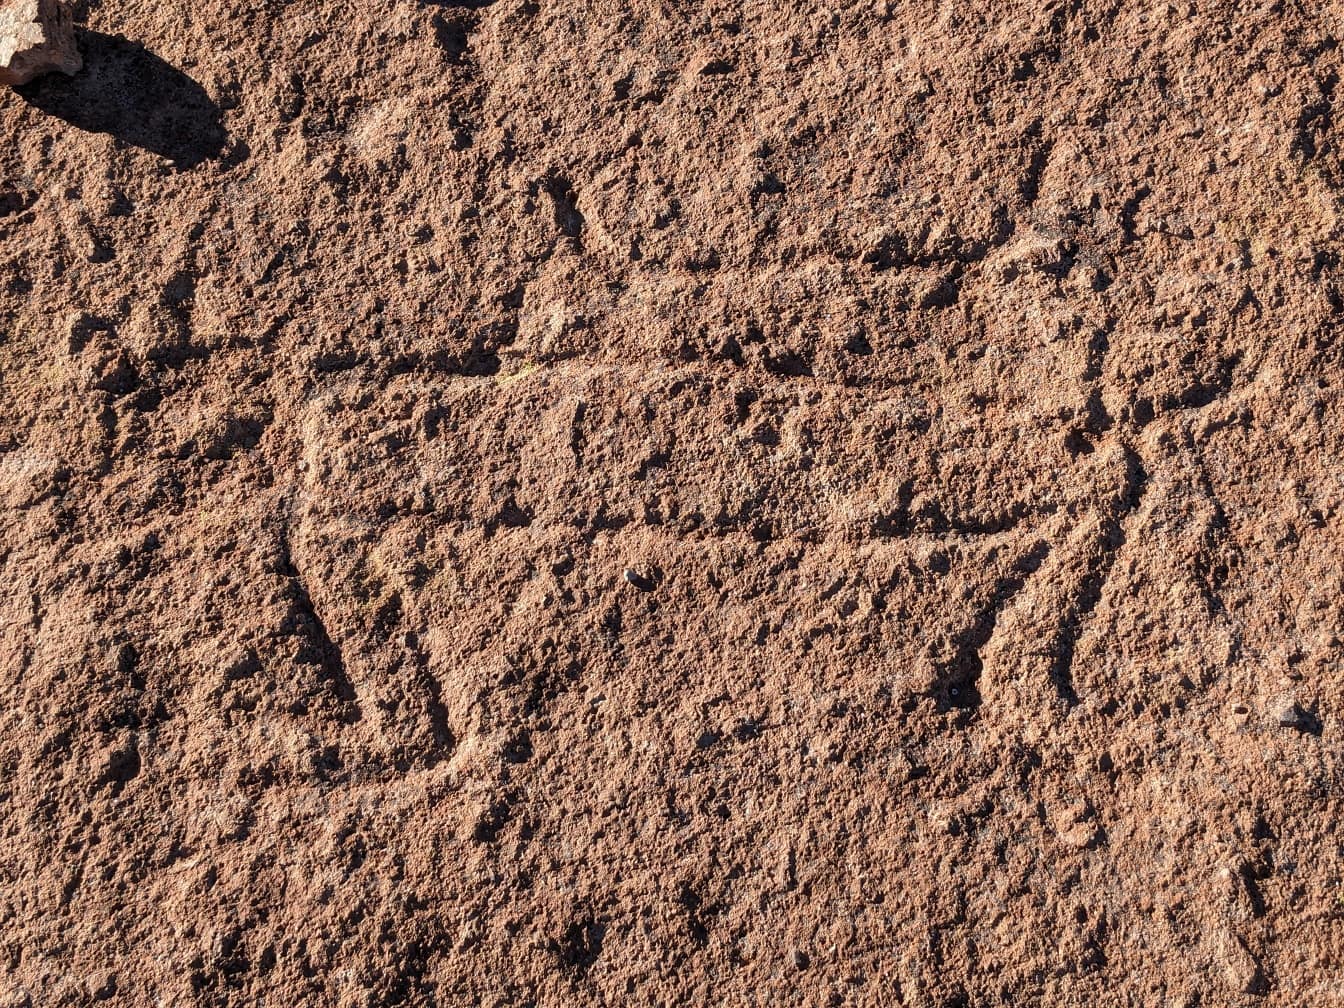 Drevni petroglifi, rezbarije stijena u Južnoj Americi datiraju iz prapovijesnog razdoblja